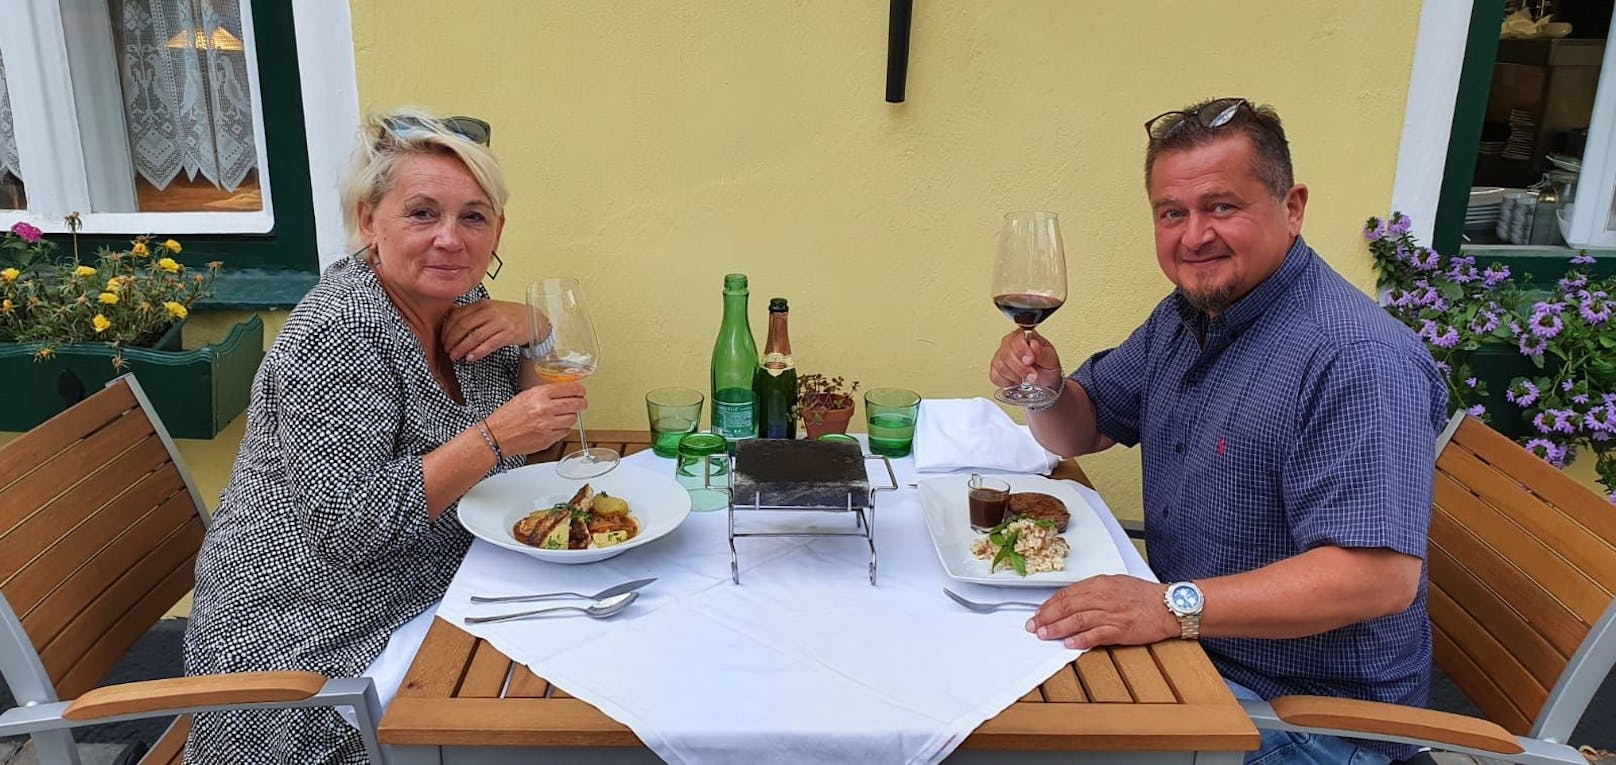 Sylvia und Josef genießen ein köstliches Abendessen in der Gaststätte Figl in St. Pölten.